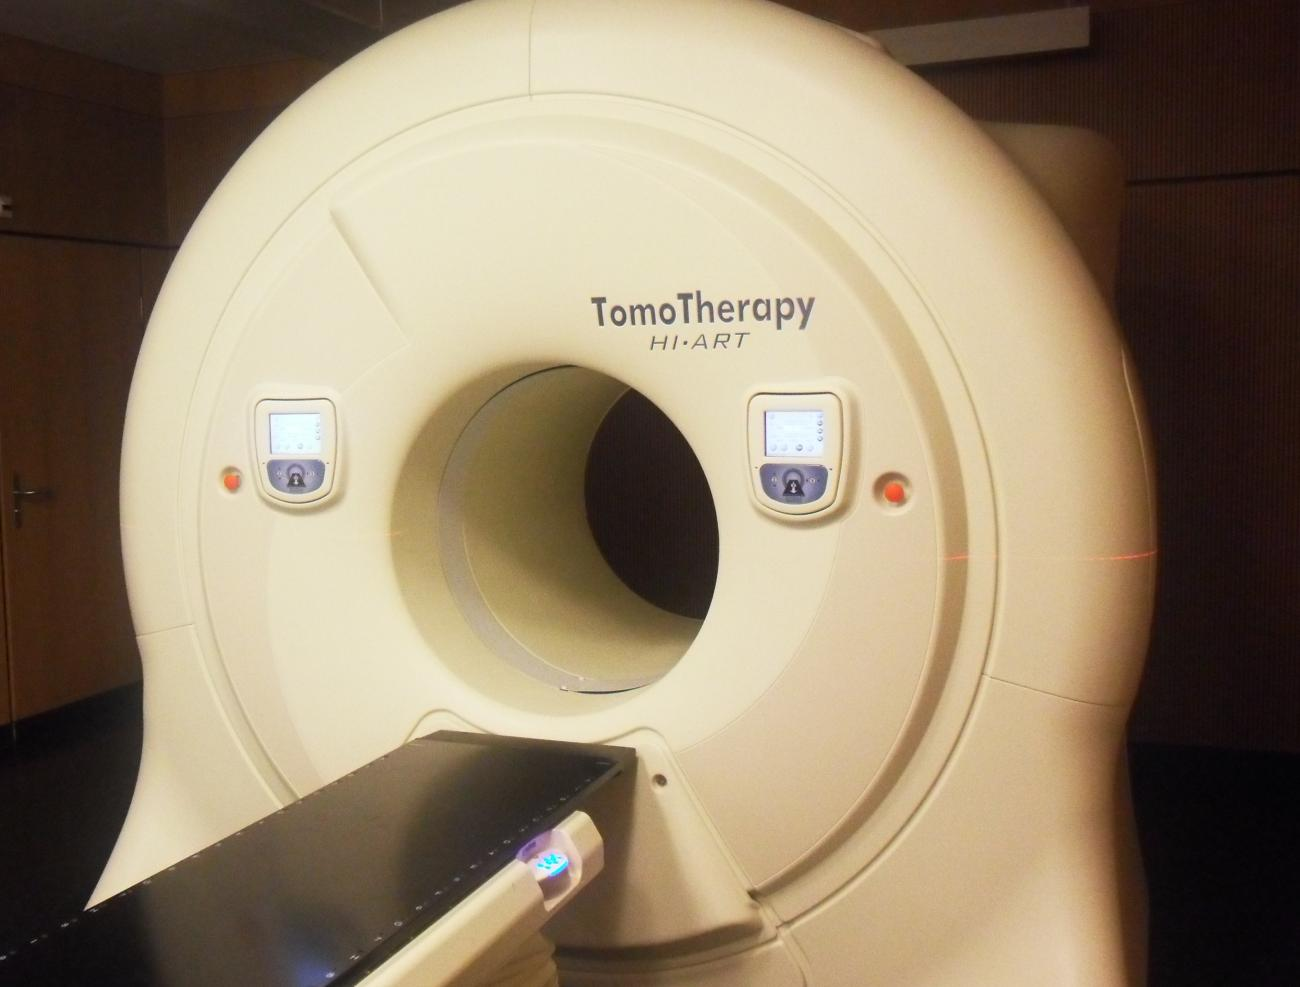 Ainda hoje a Tomoterapia está em constante desenvolvimento, sempre na procura de melhorar as suas potencialidades e o seu software.